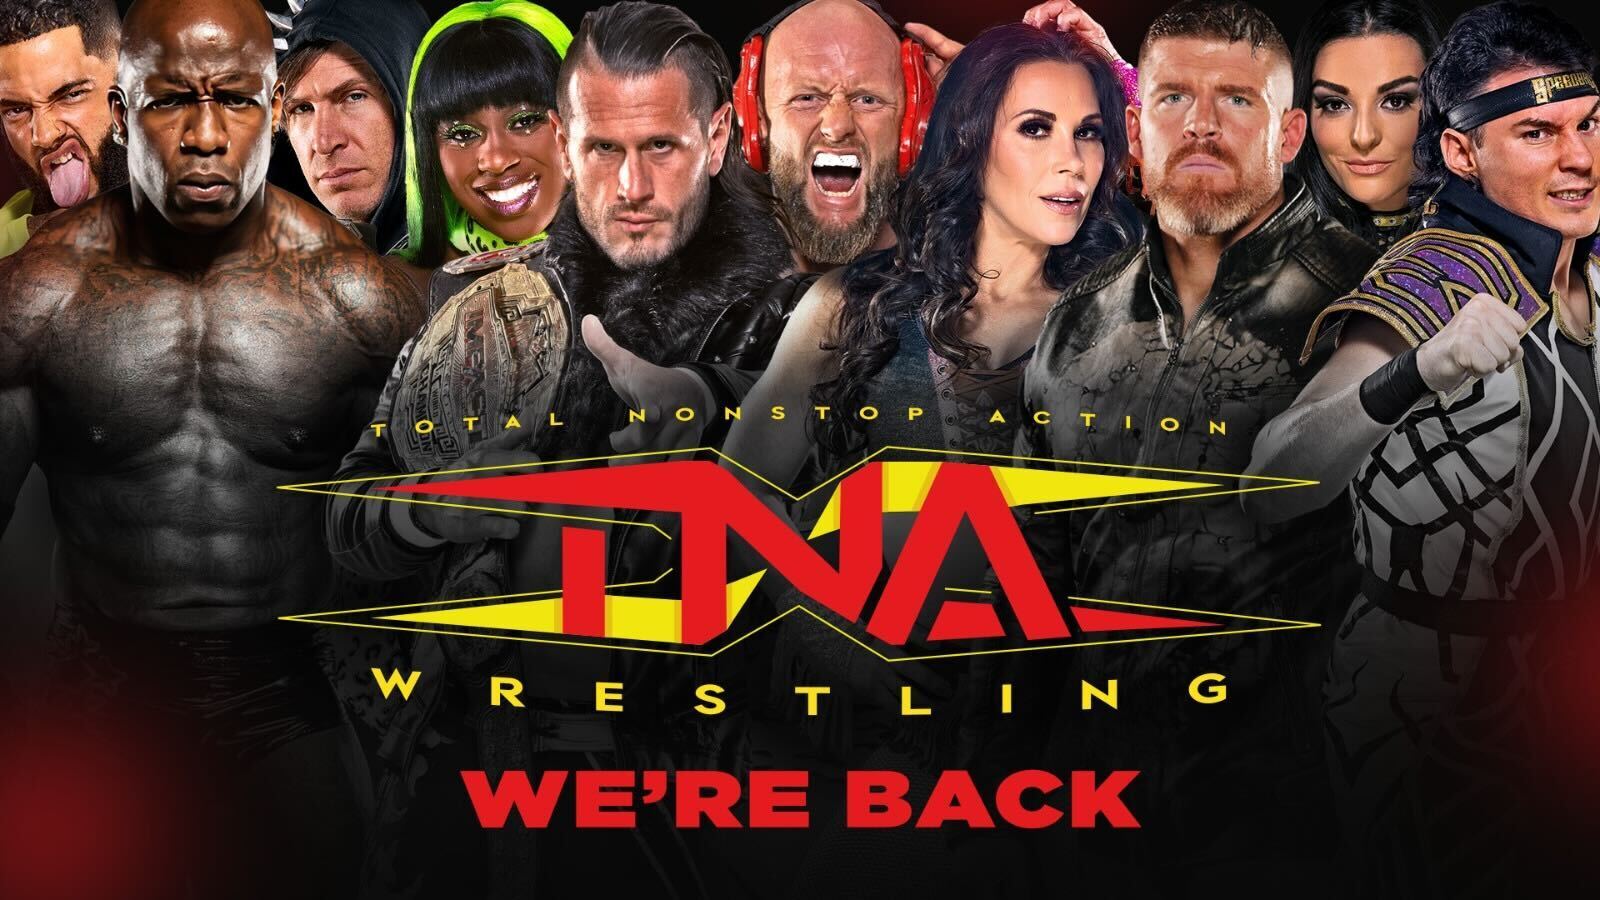 The return of TNA wrestling